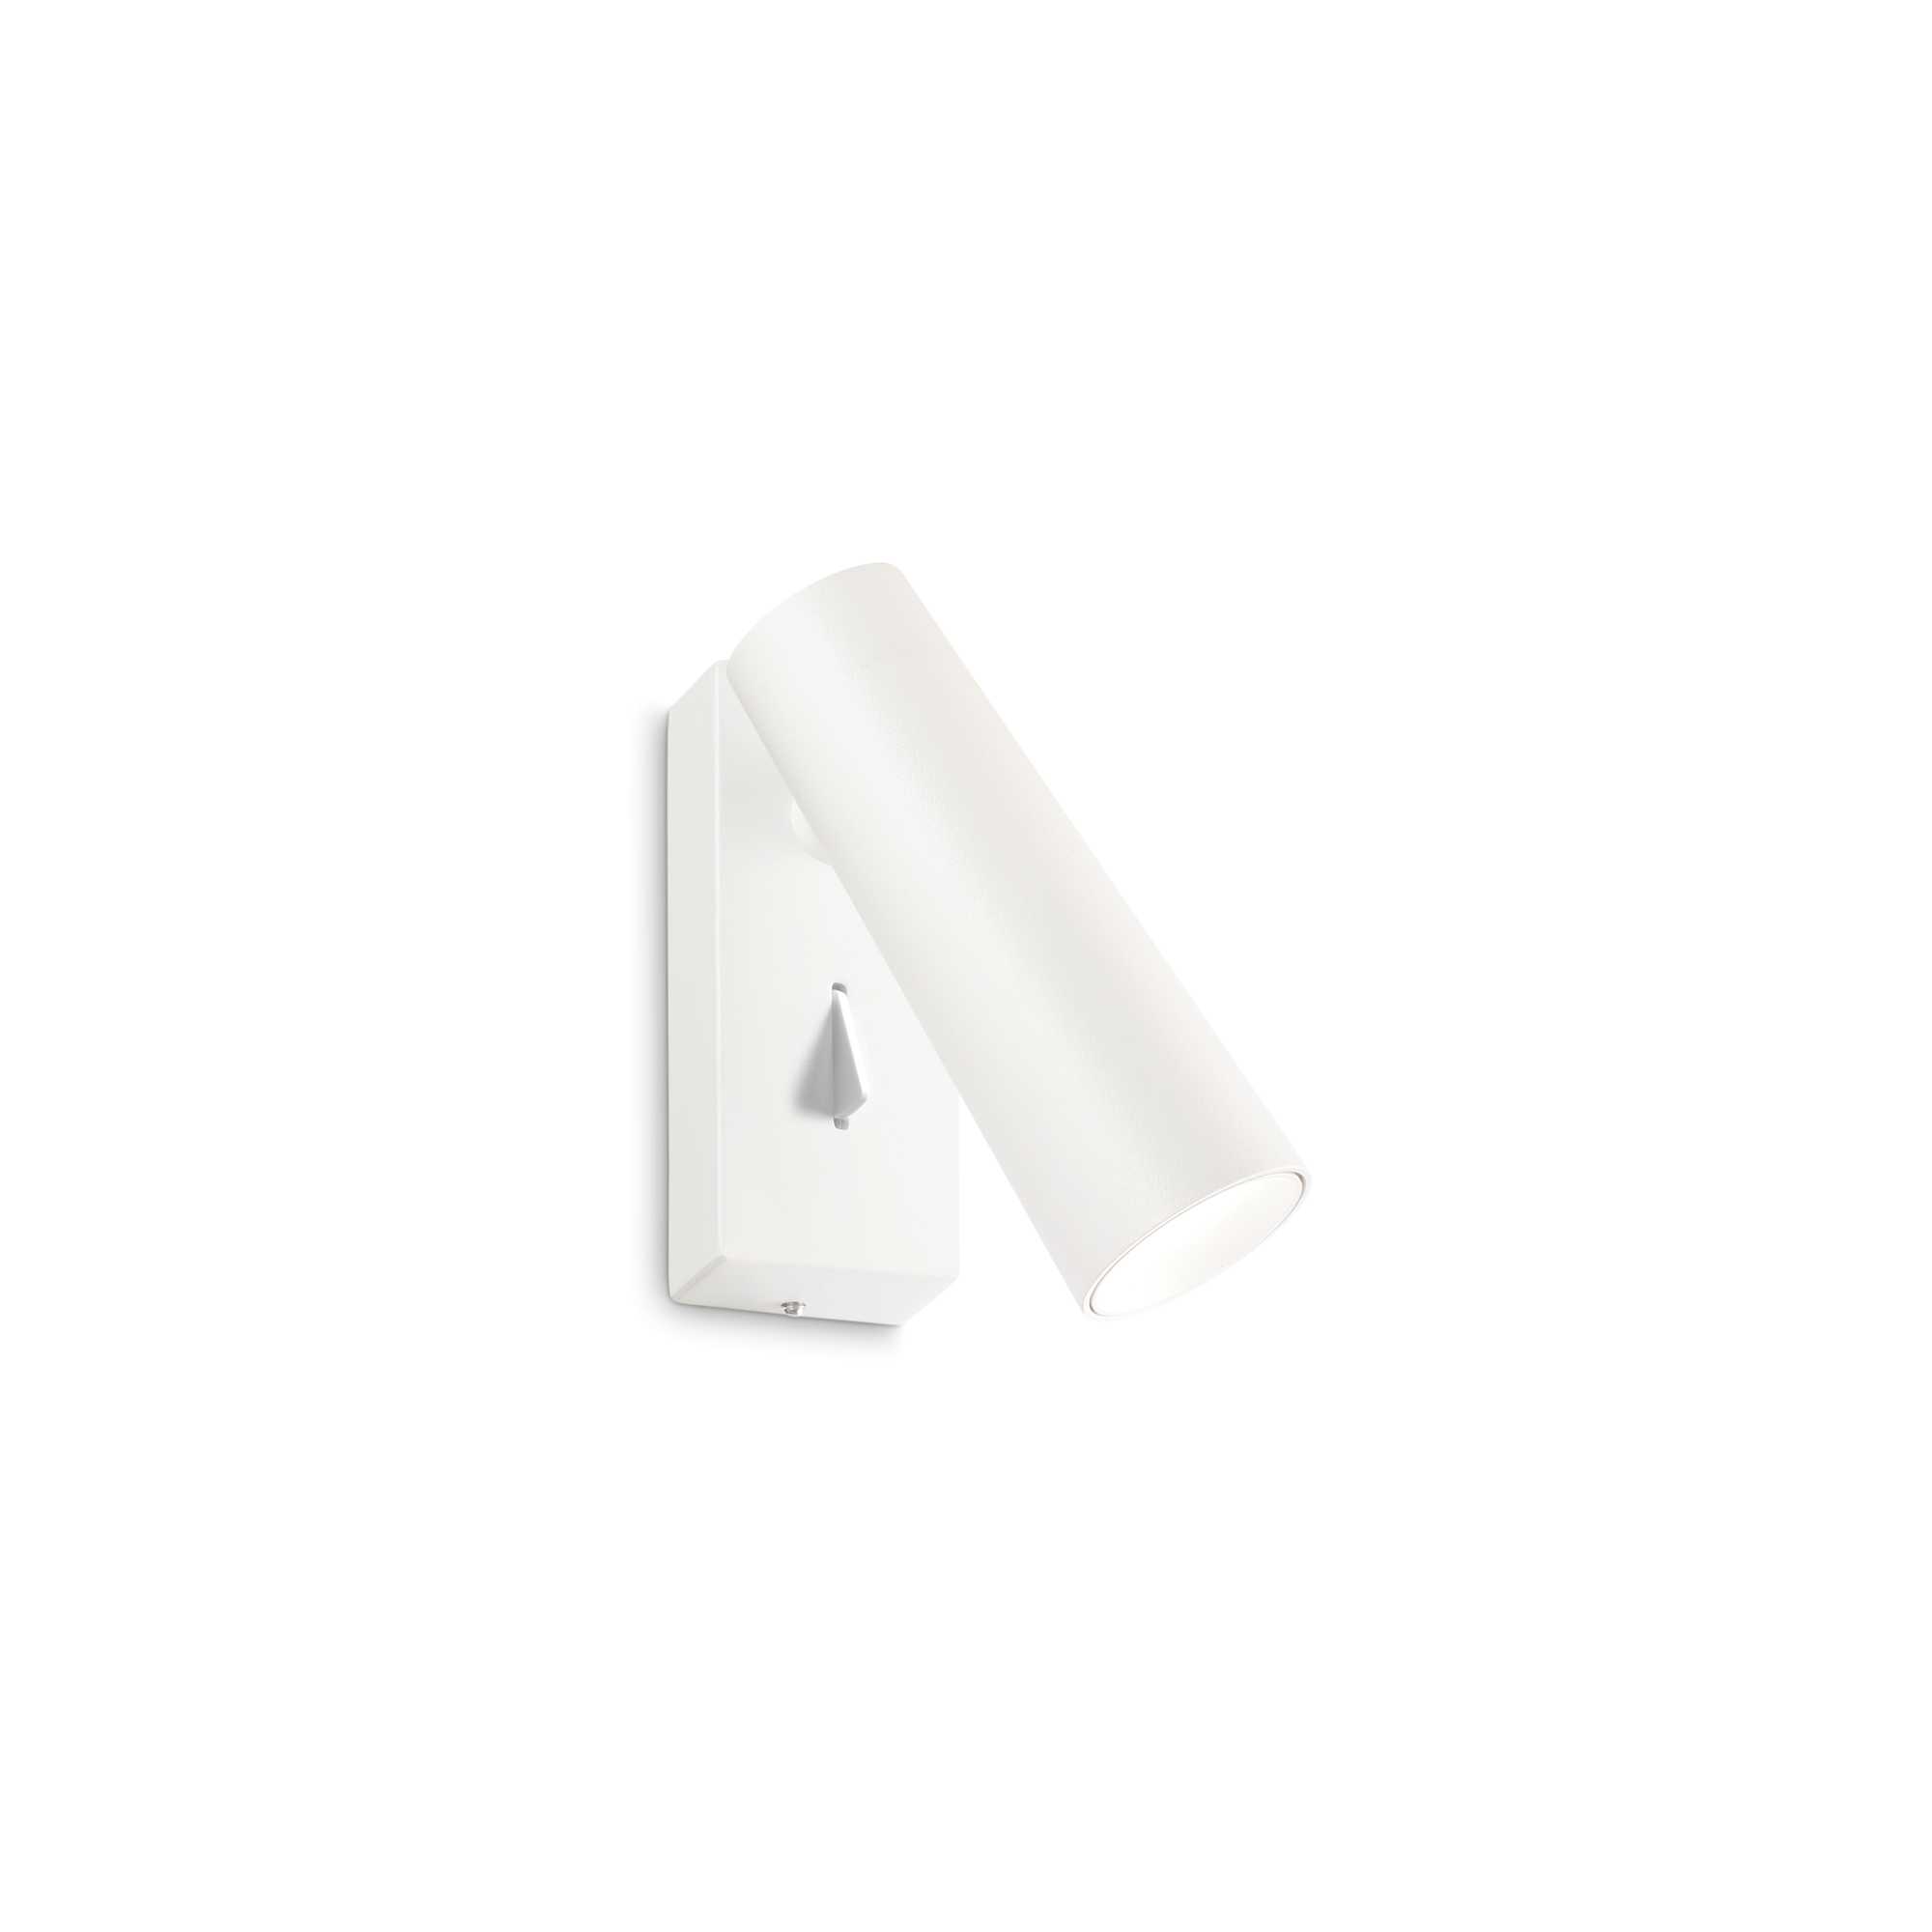 AD hotelska oprema Zidna lampa Pipe ap-Bijele boje slika proizvoda